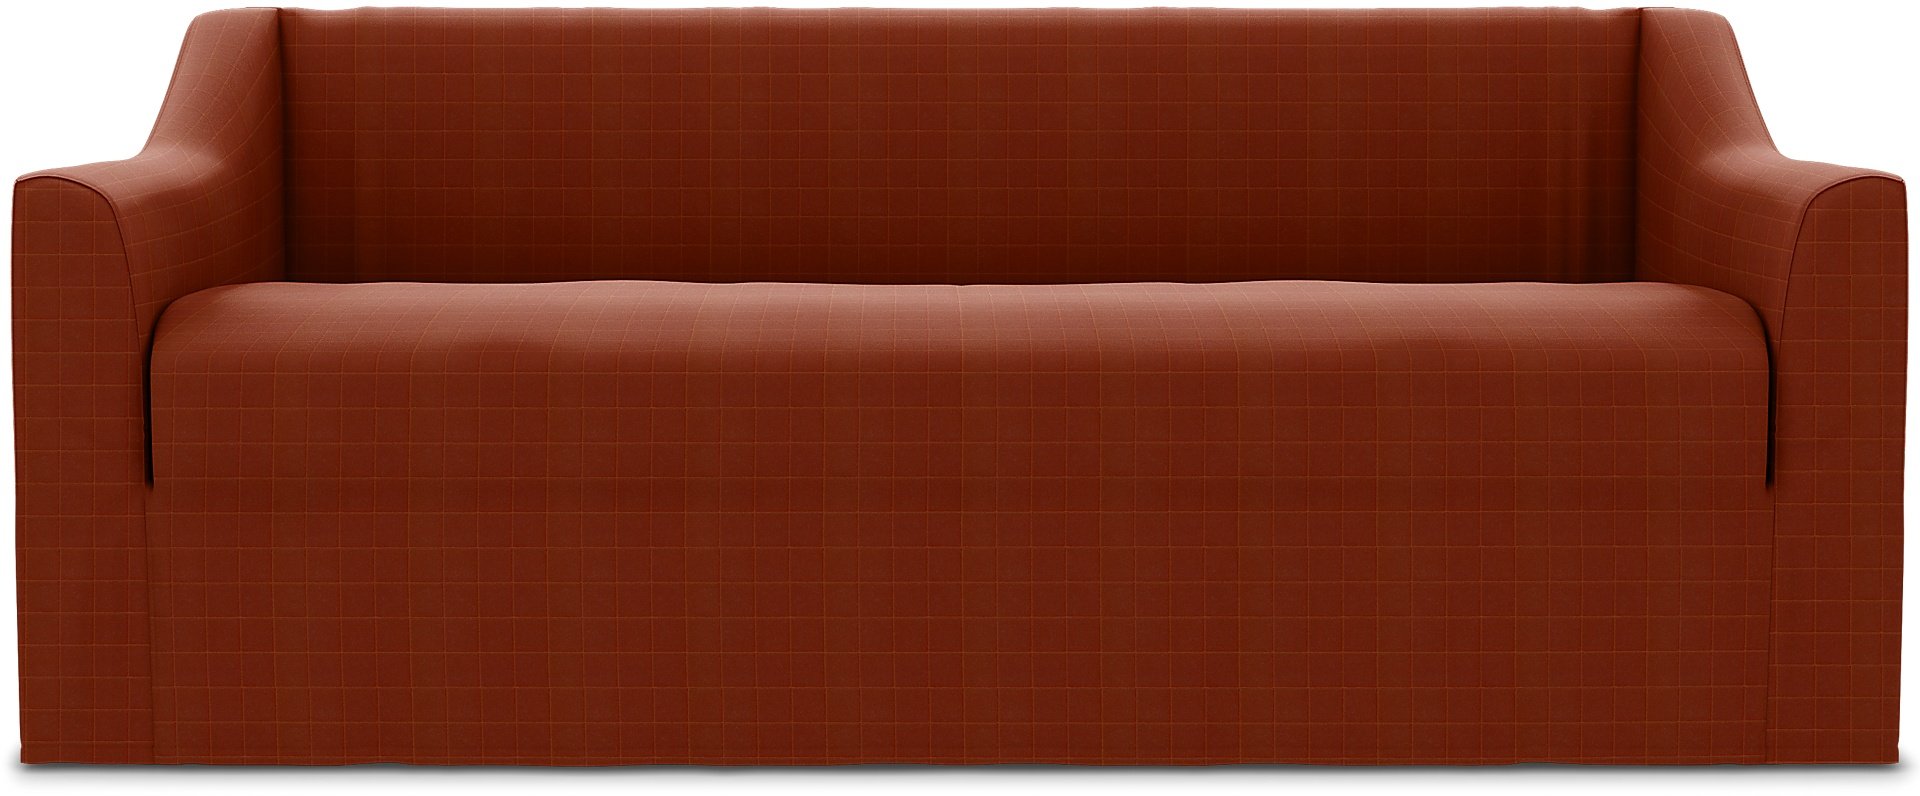 Farlov 2 Seater Sofa Cover, Burnt Sienna, Velvet - Bemz